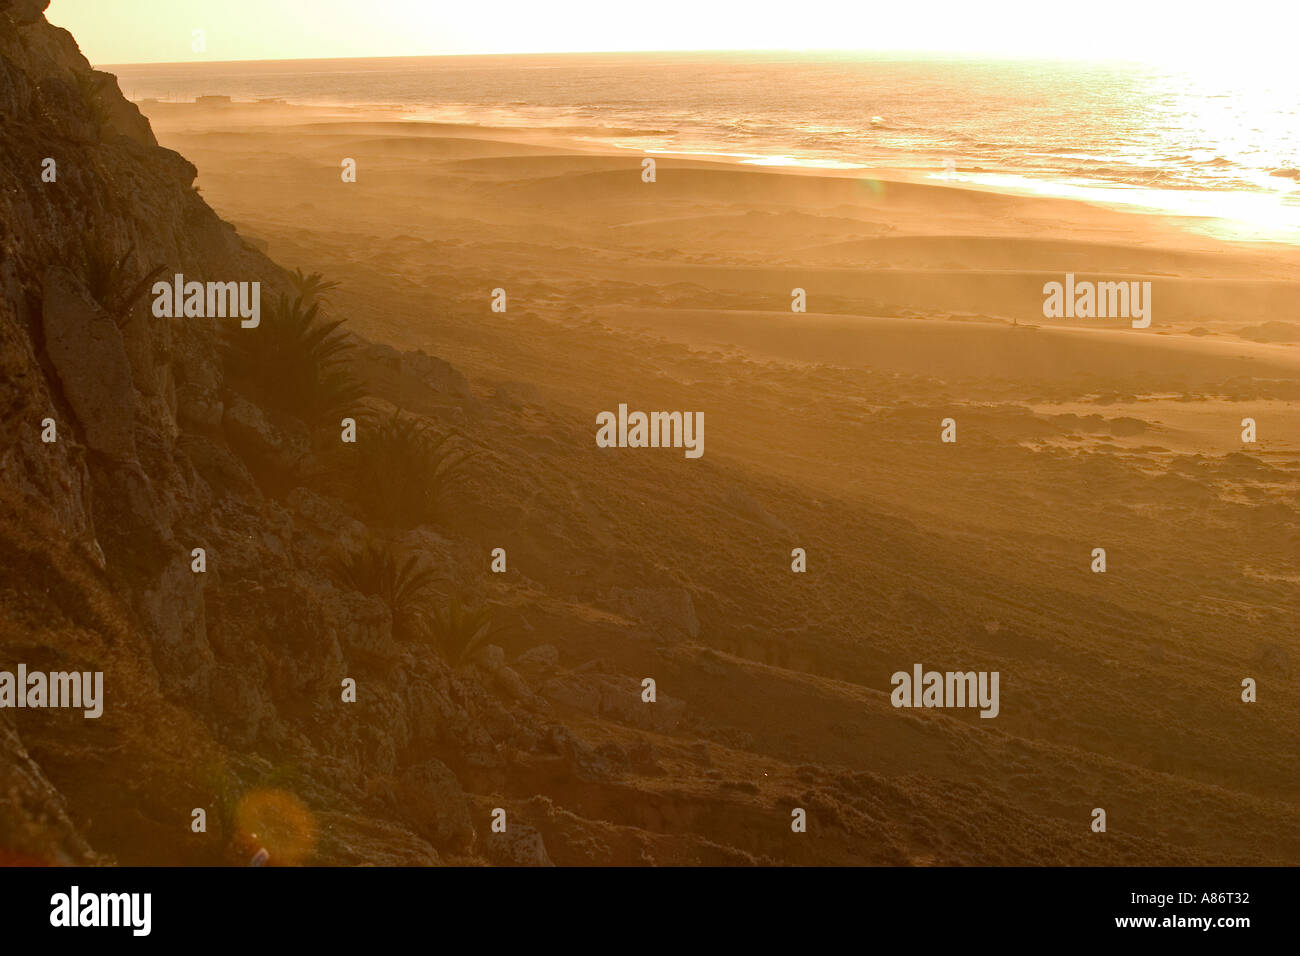 Le soleil se couche sur une plage sur la côte atlantique du Maroc Banque D'Images